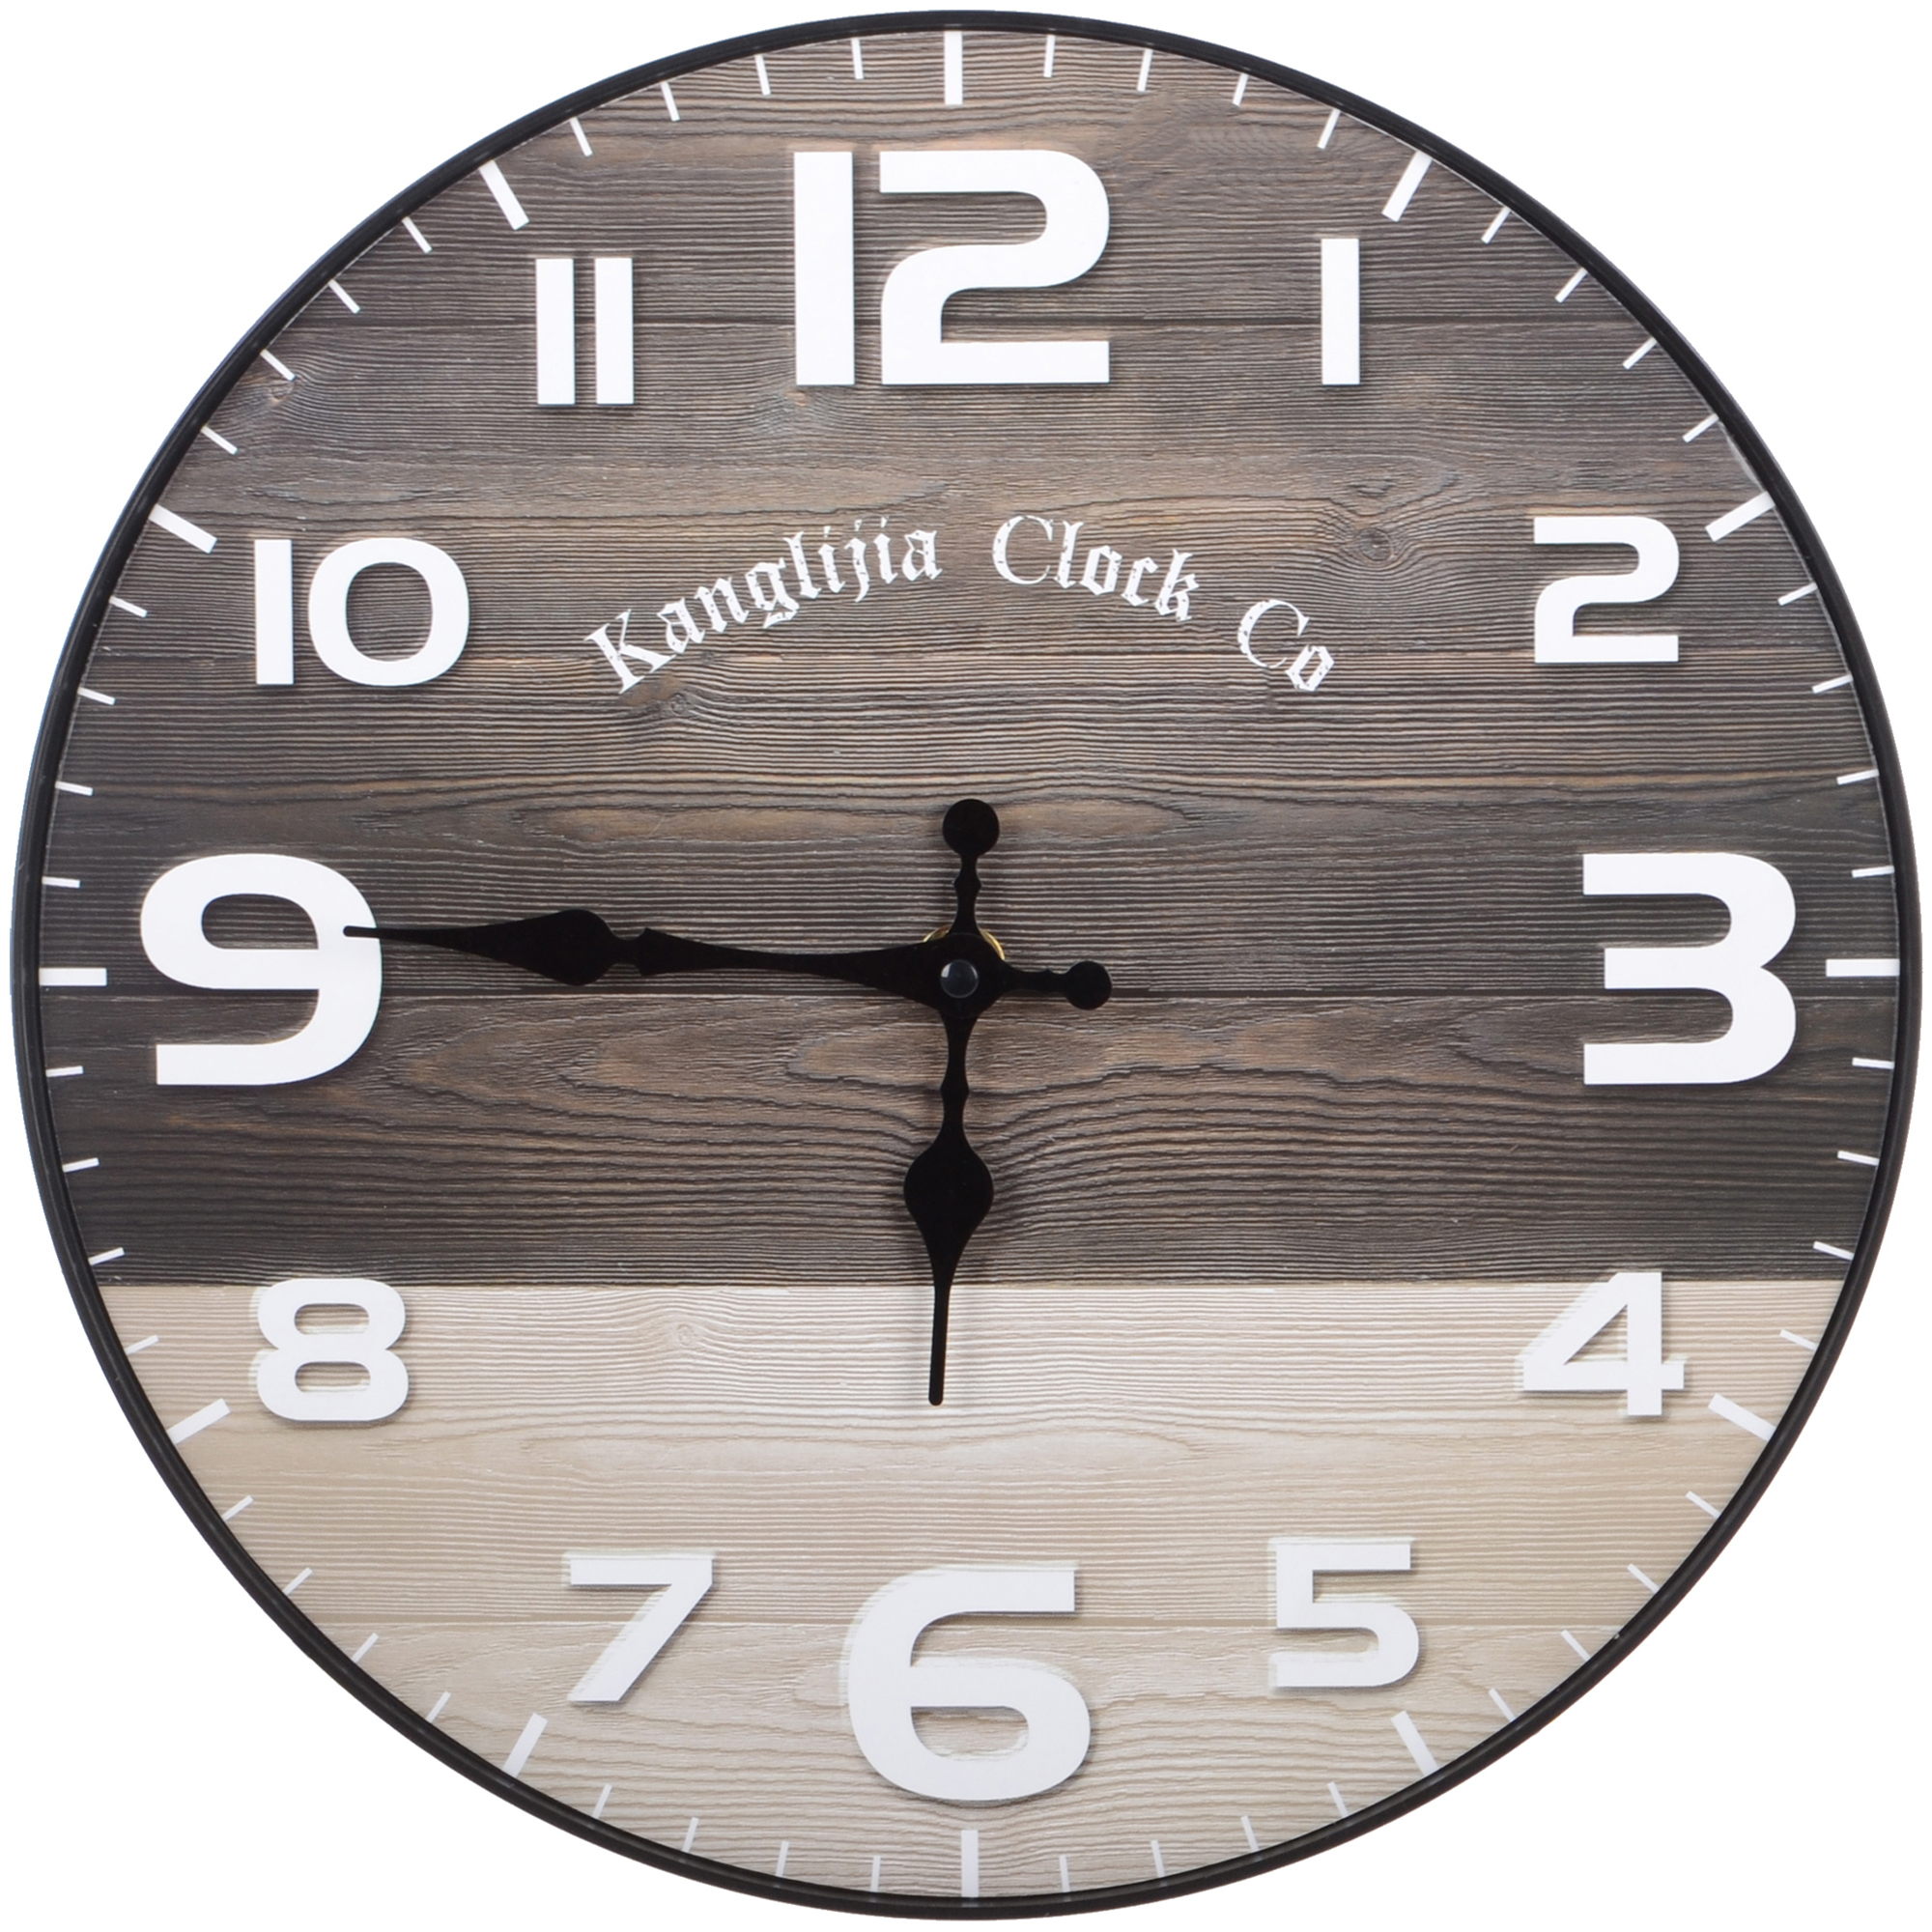 Часы настенные Kanglijia Clock коричневые 29,5х29,5х3,5 см texttime clock часы настенные